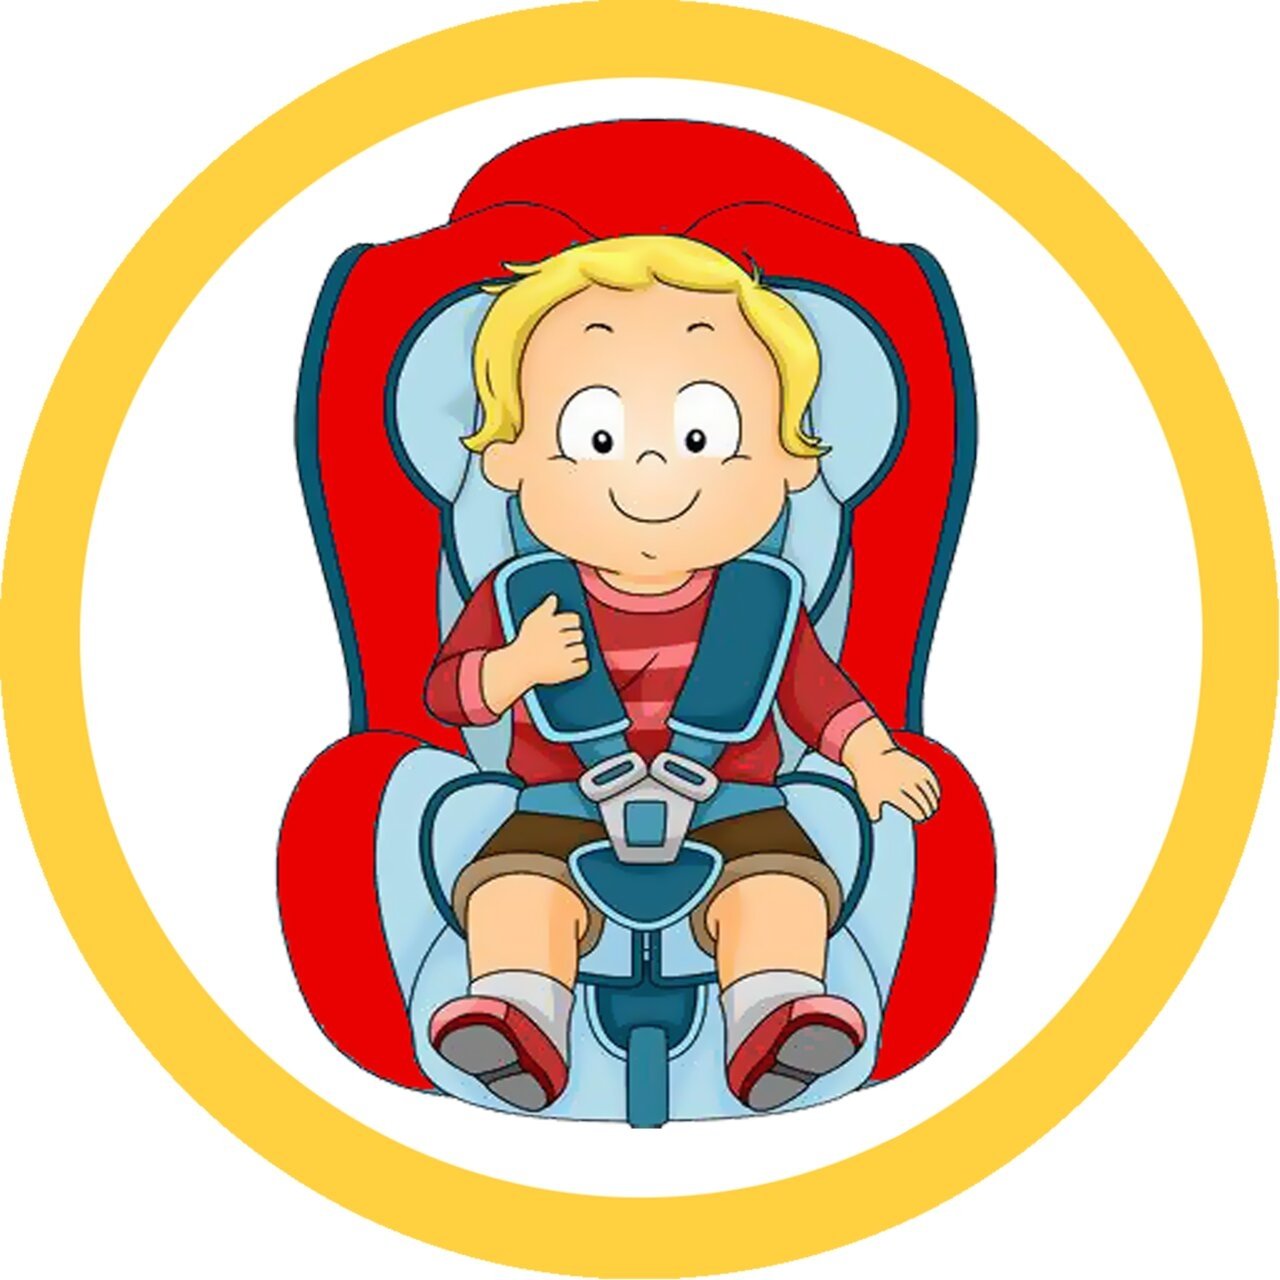 Пристегни ребенка в машине. Автокресло для детей. Ребенок в автокресле. Ребенок автокресло Пристегни. Автомобильное кресло для детей в ДОУ.